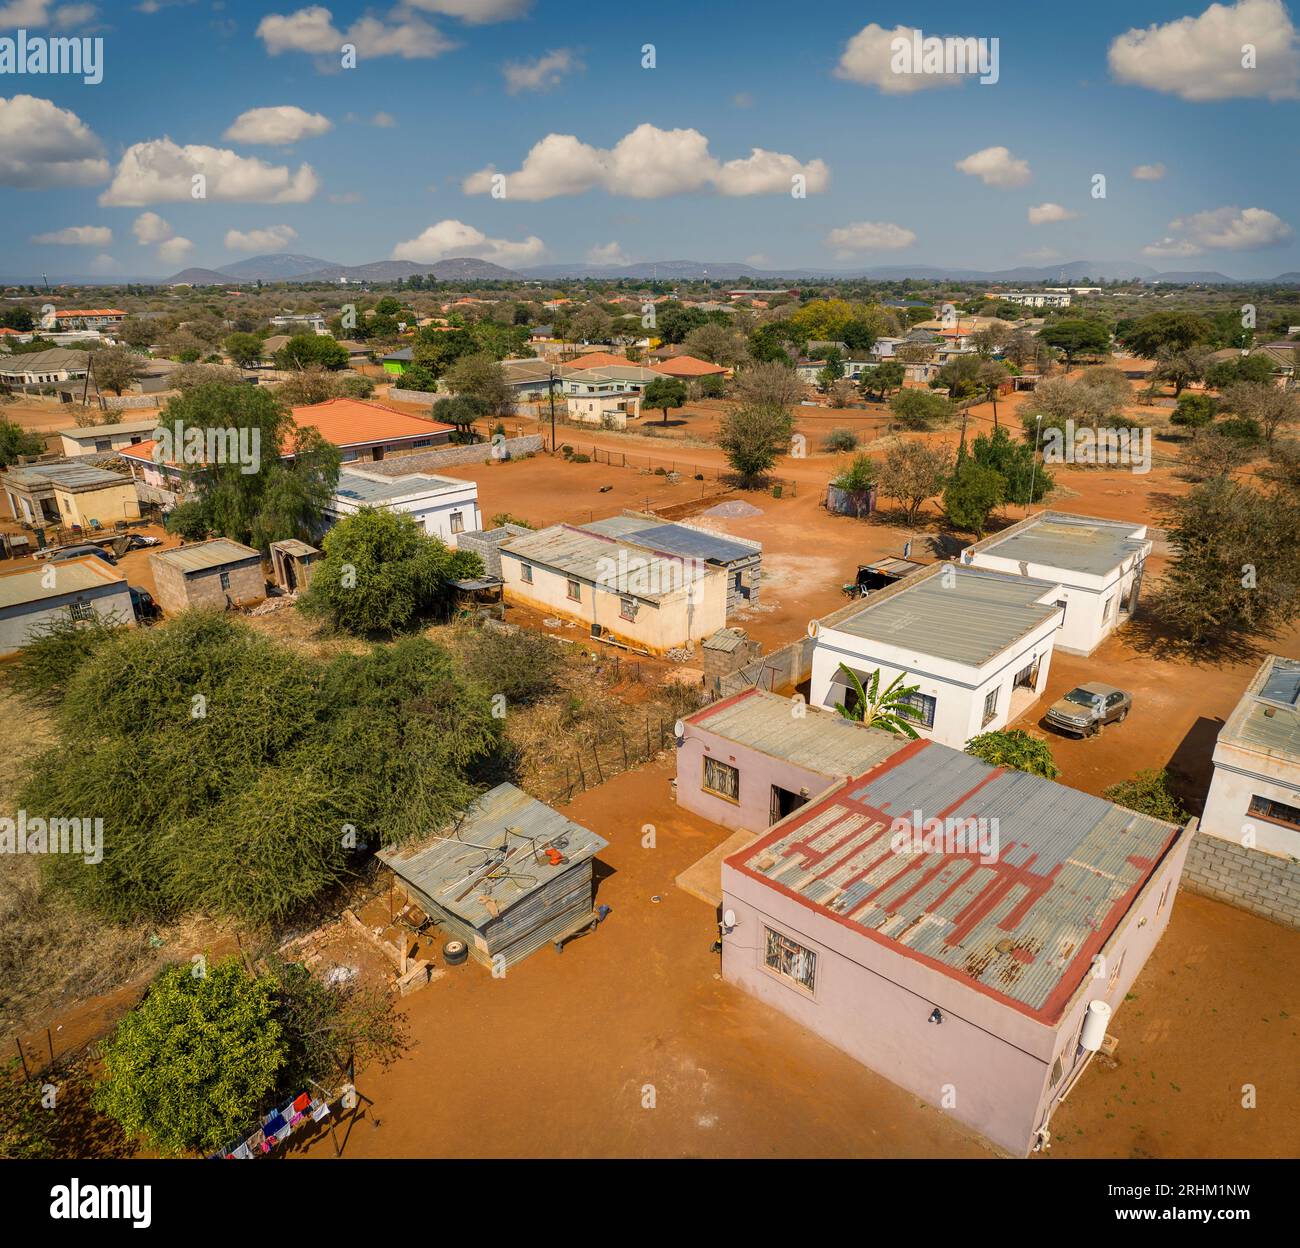 vista aerea del tipico villaggio africano moderno in botswana, con strade sterrate polverose ed edifici cubici Foto Stock